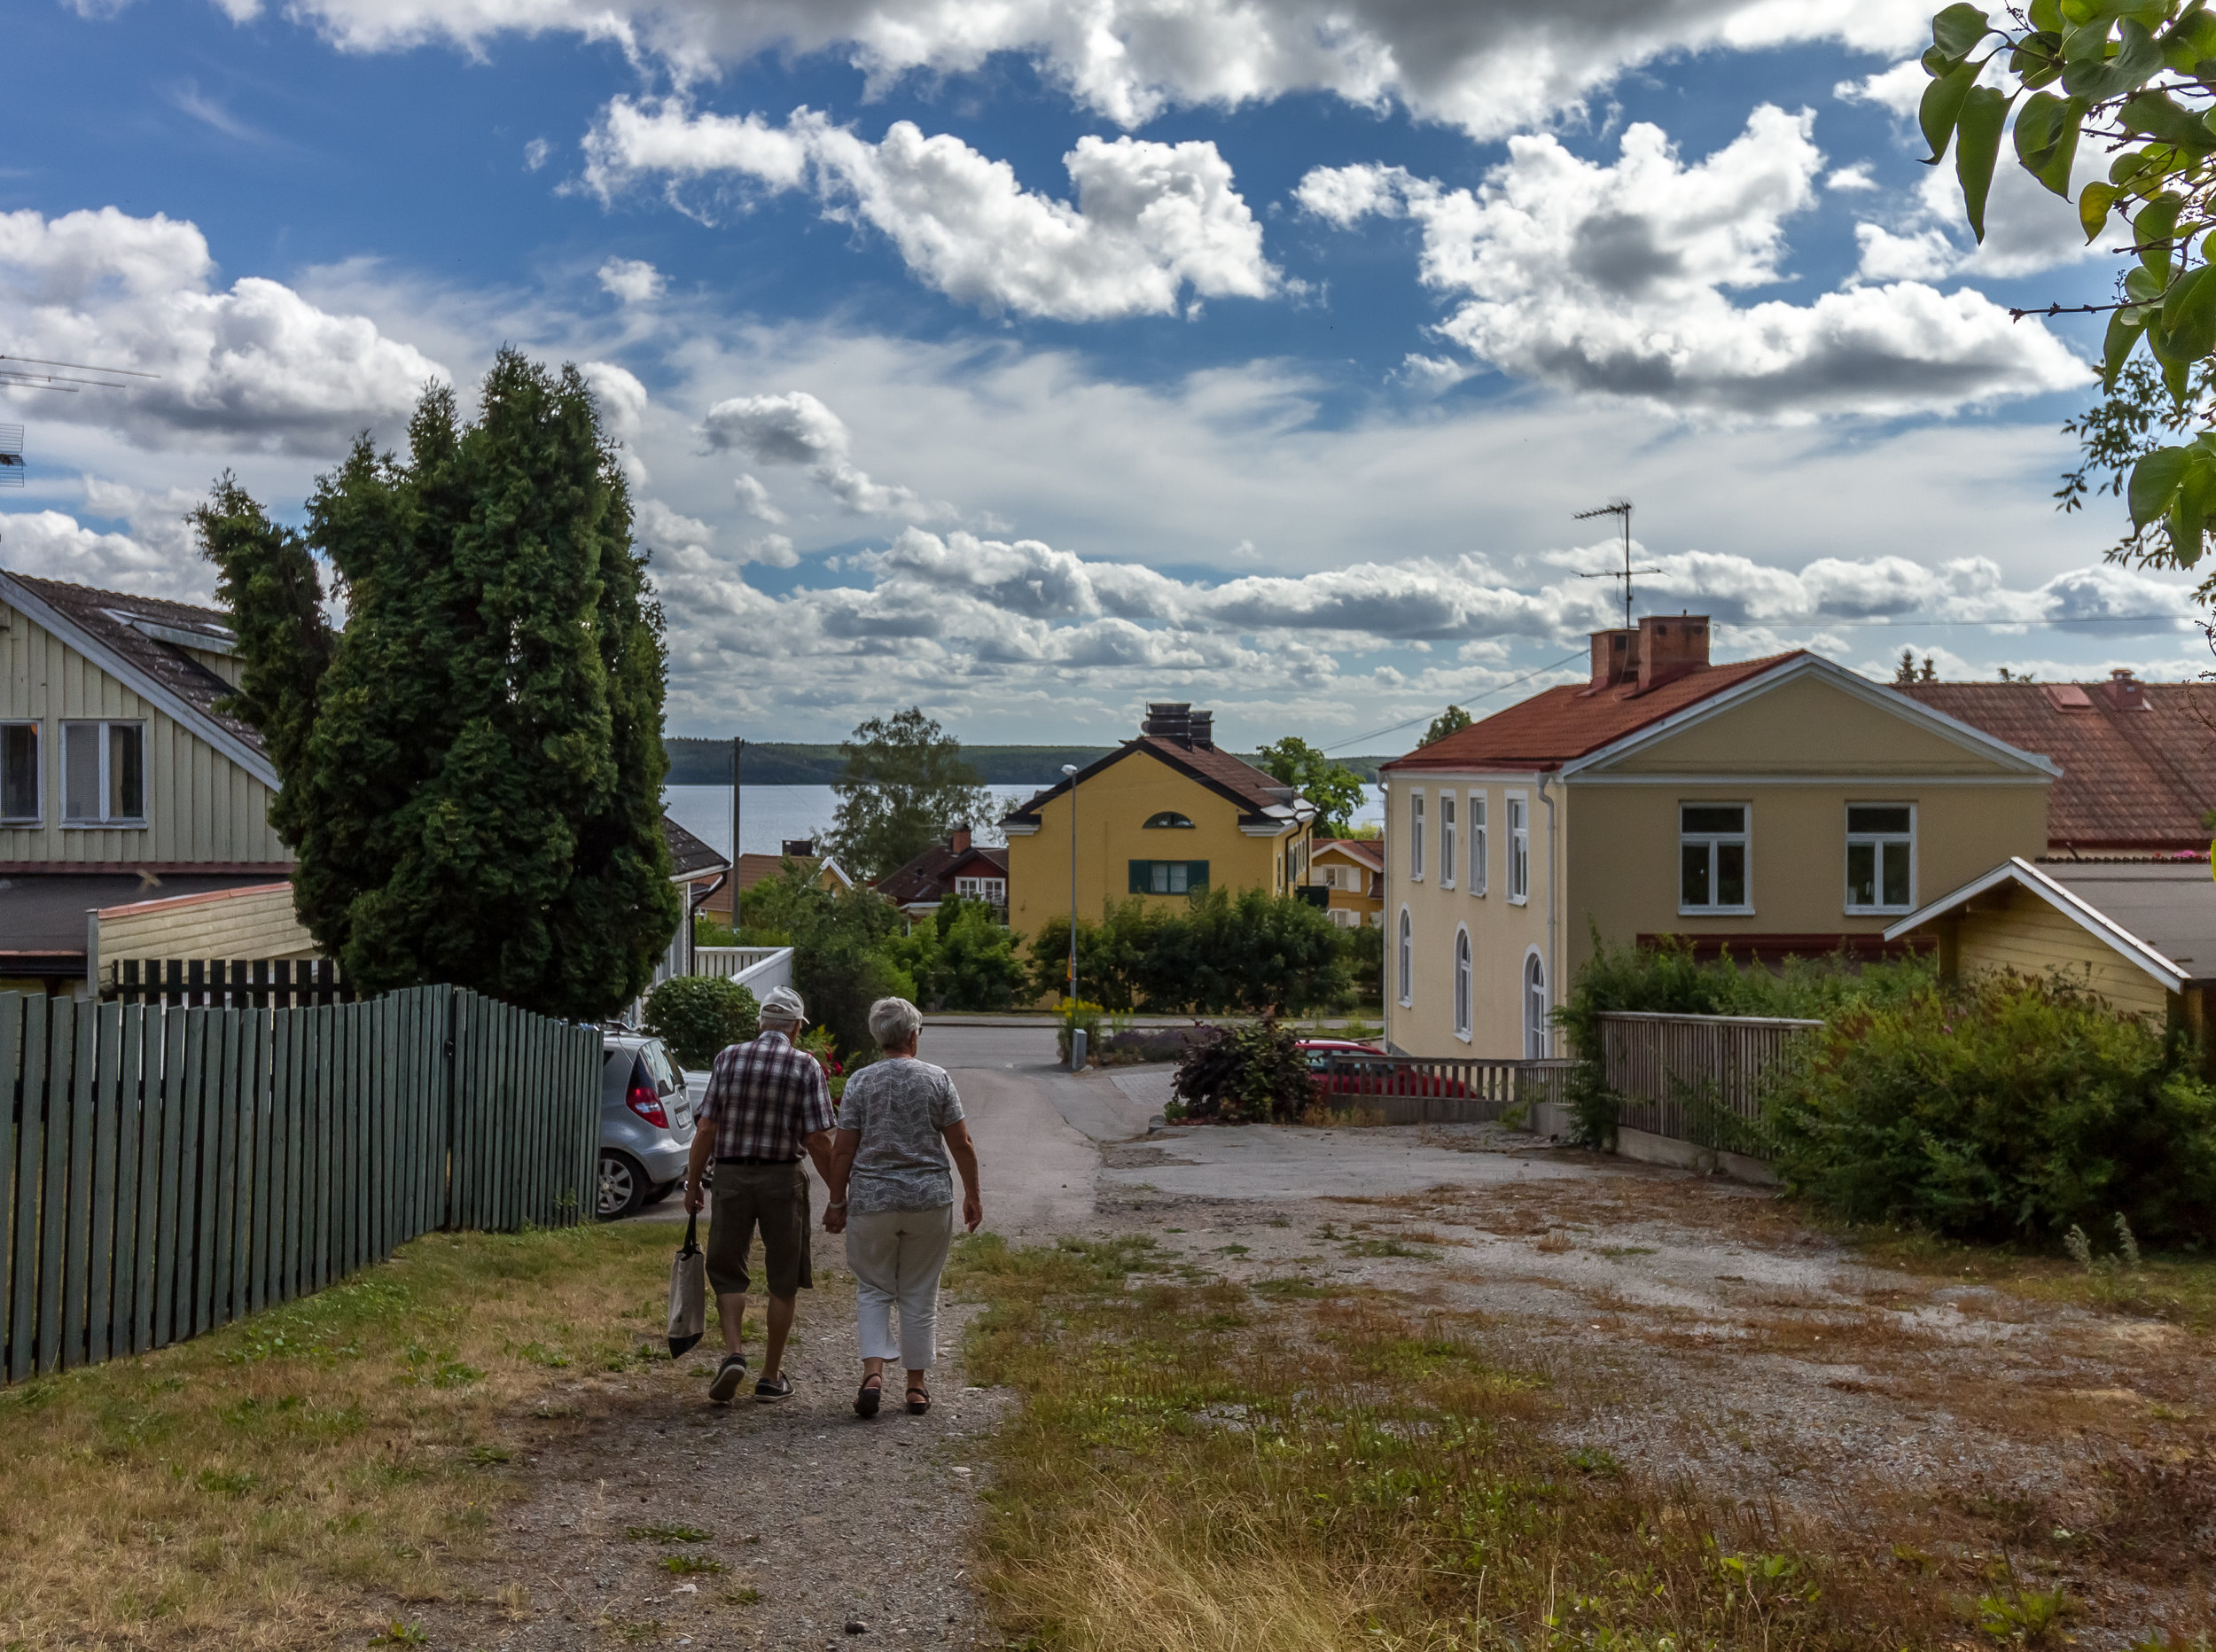 Sigtuna, Sweden 2017